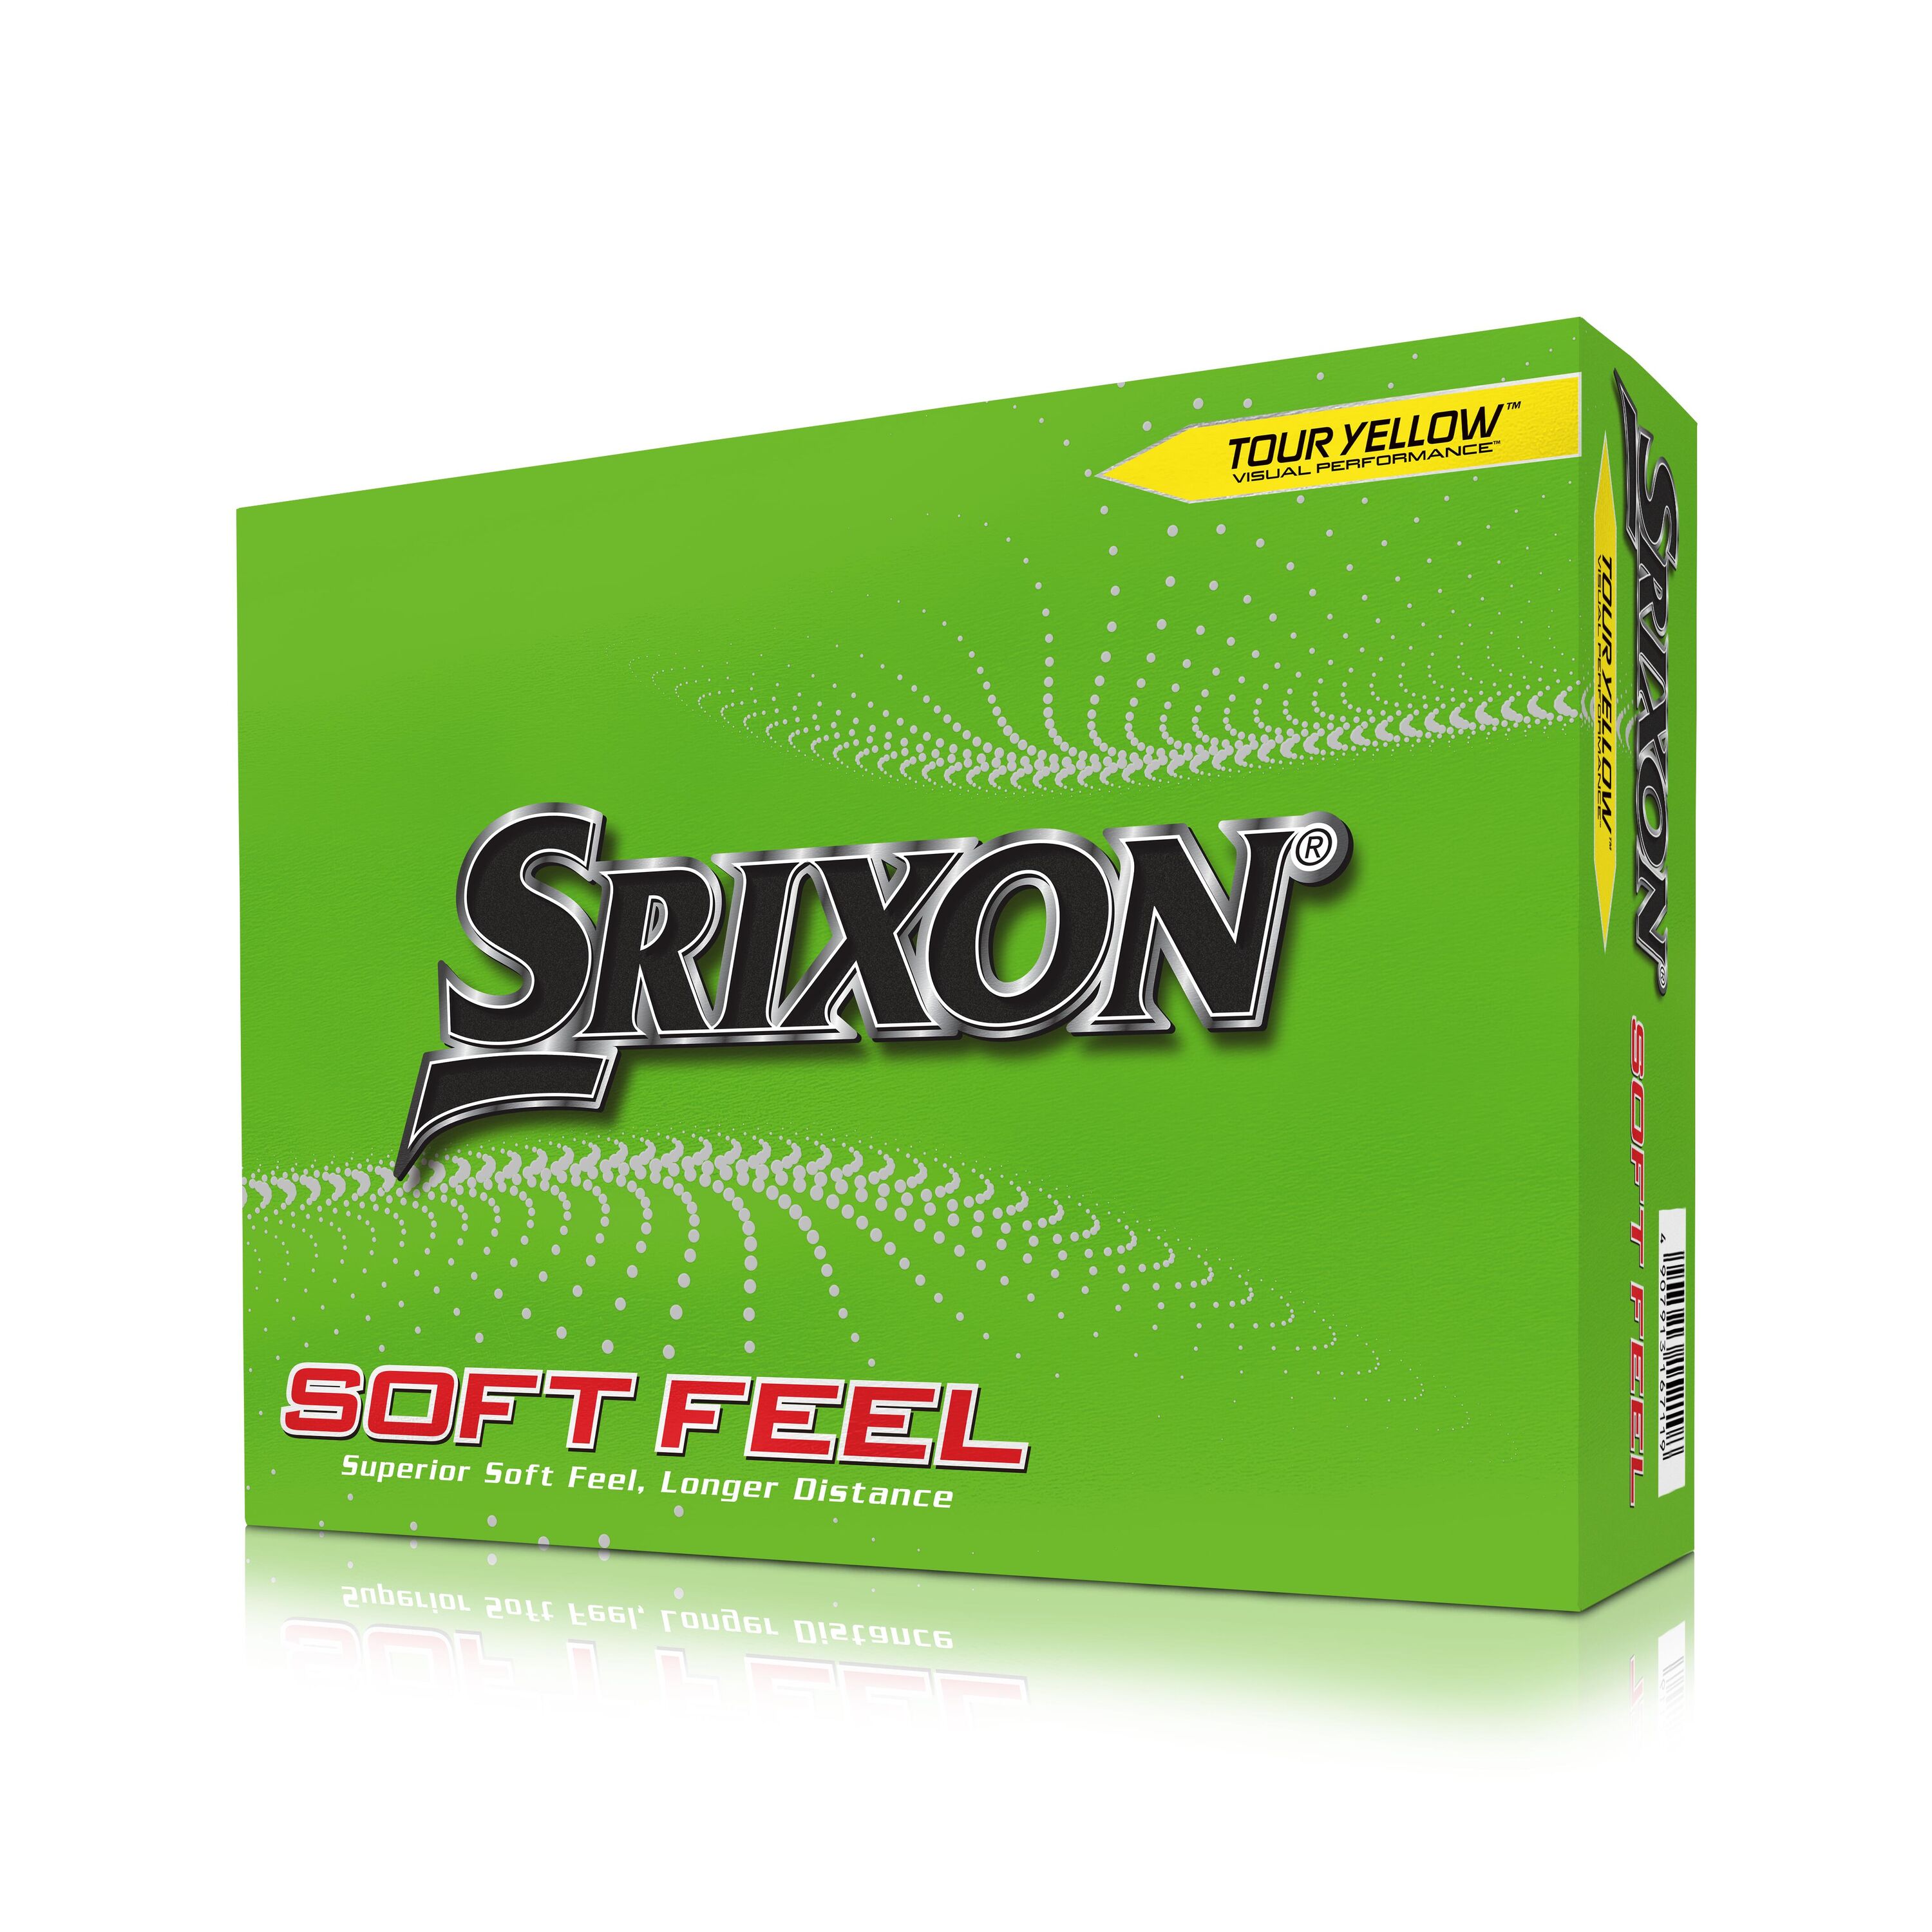 SRIXON GOLF BALLS X12 - SRIXON SOFT FEEL YELLOW